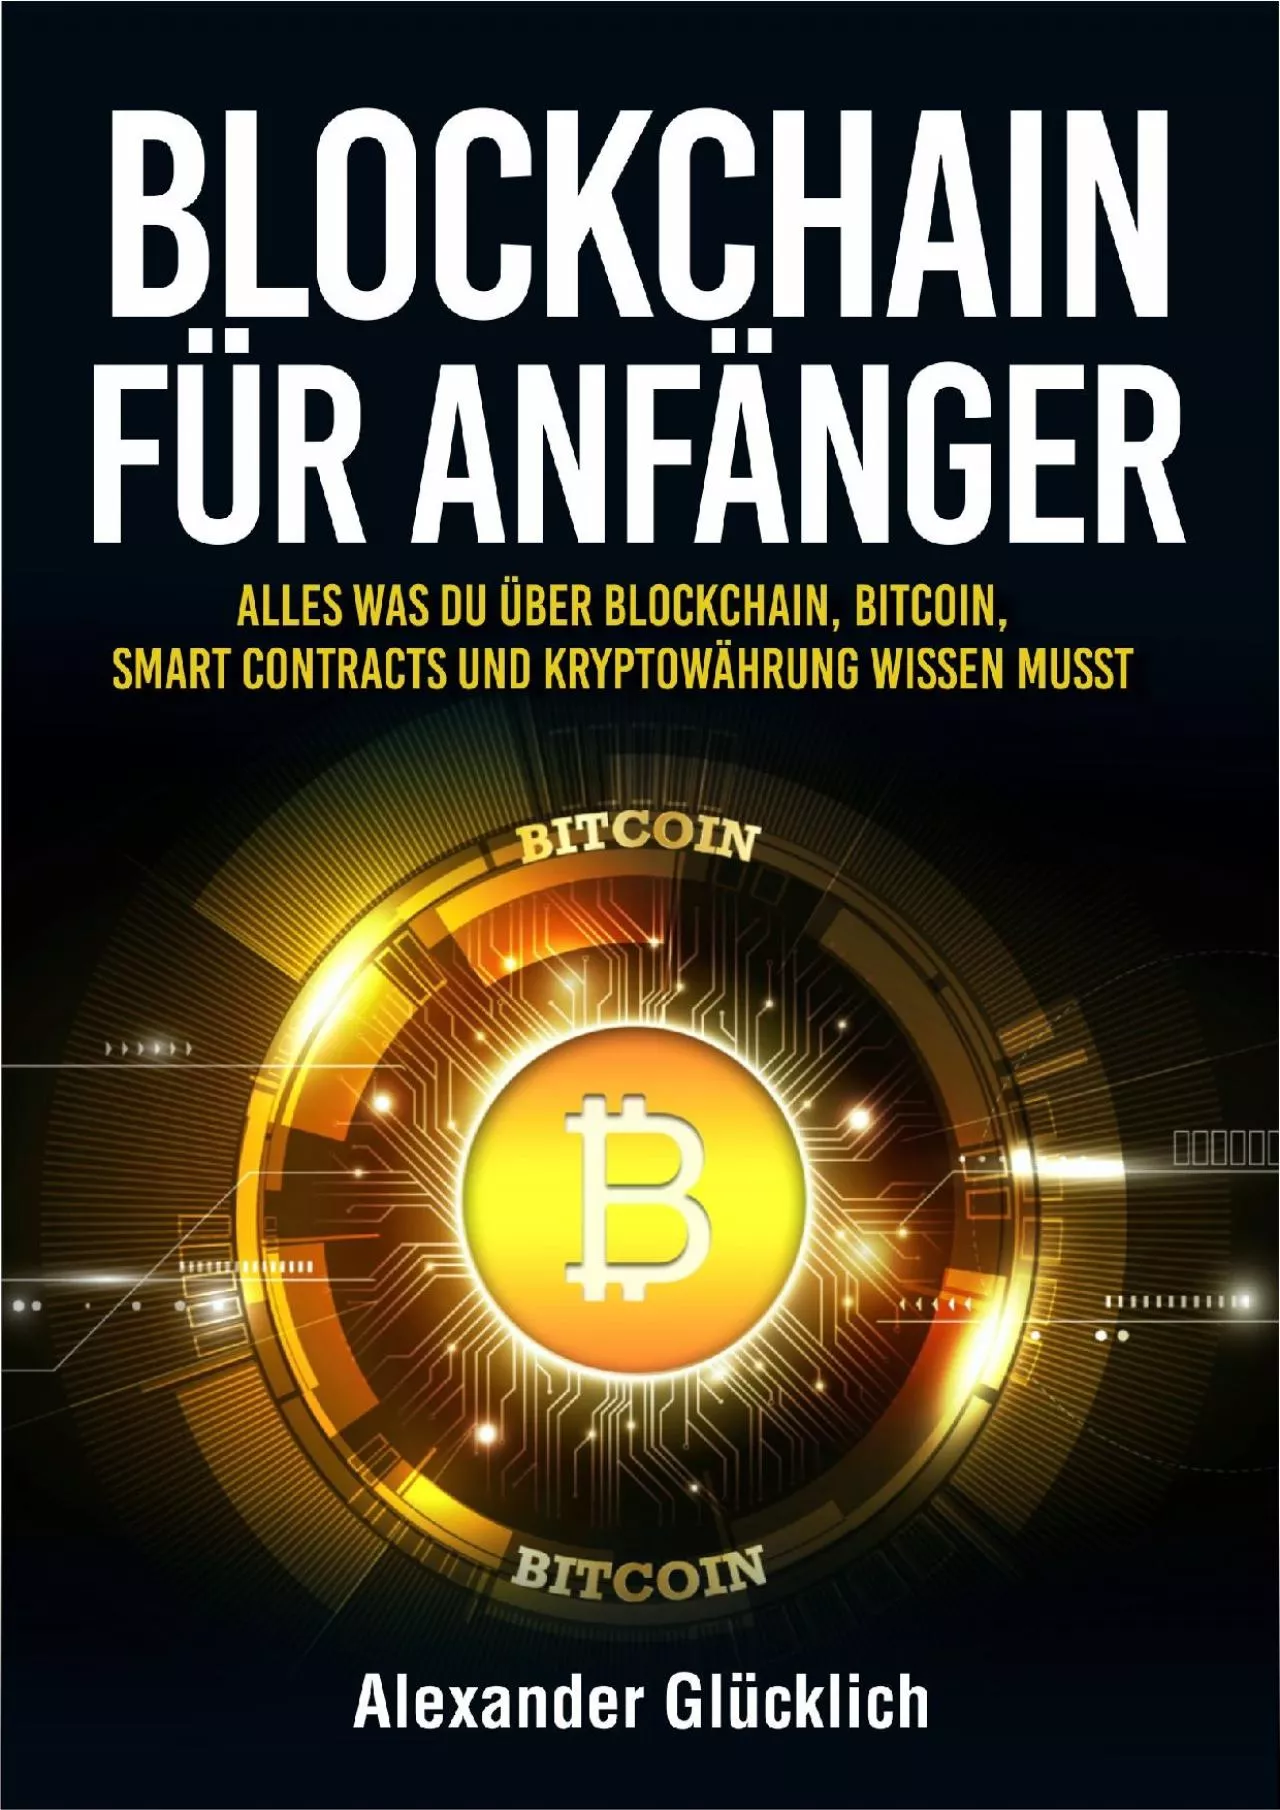 (READ)-BLOCKCHAIN FÜR ANFÄNGER: Alles was du über Blockchain, Bitcoin, Smart Contracts